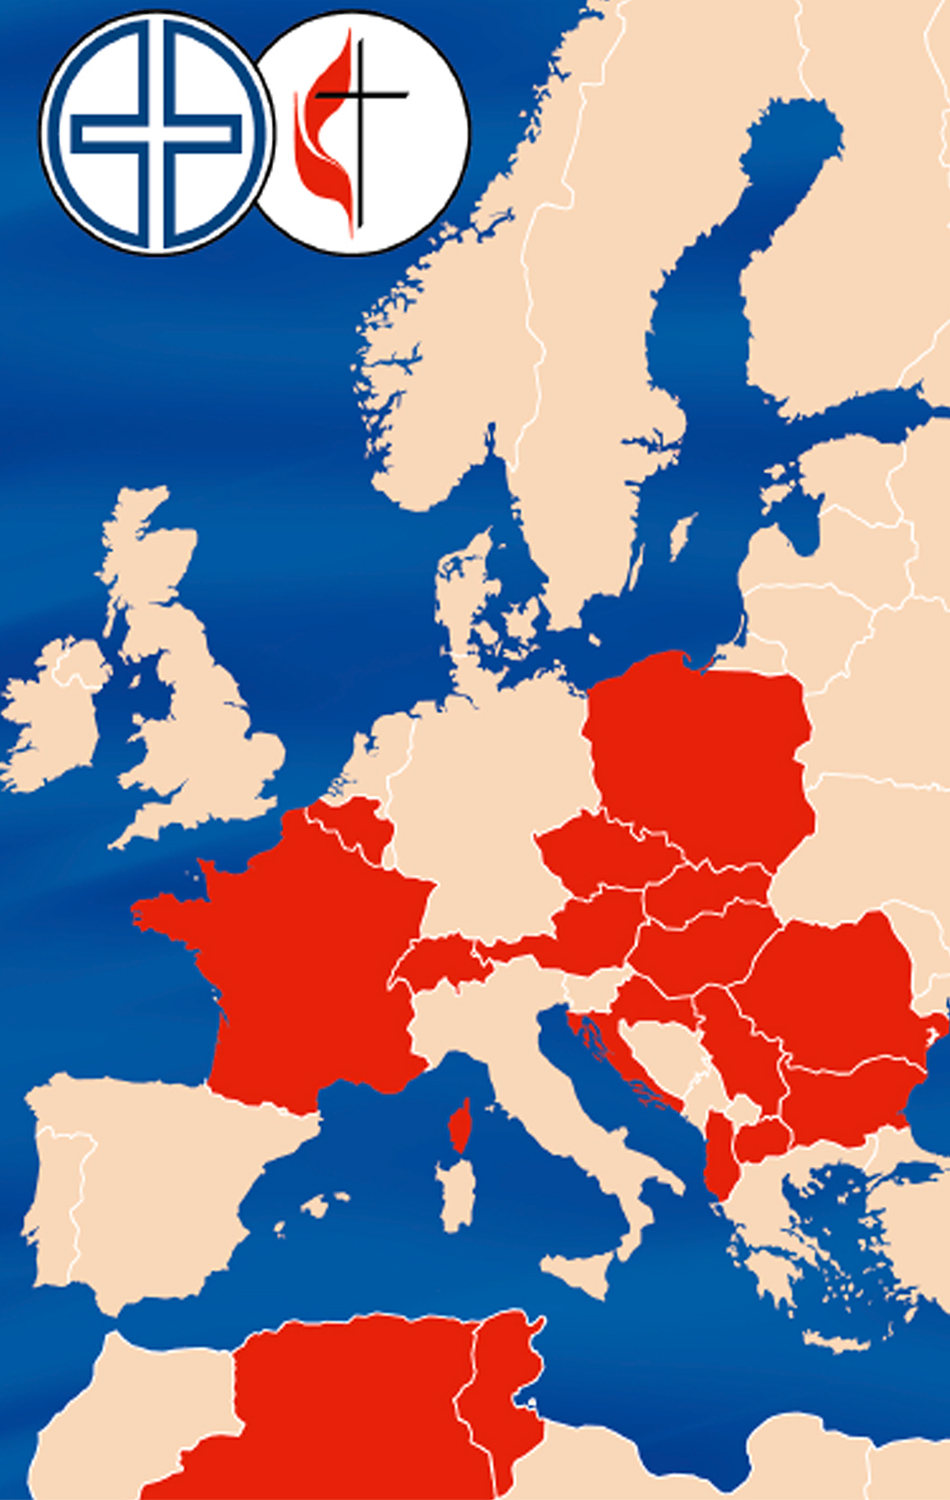 El mapa muestra parte de las conferencias centrales de Europa Central y Meridional, donde se están atendiendo refugiados/as provenientes de territorios en conflicto en Ucrania. Gráfico cortesía de la Conferencia Central de Europa Central de La Iglesia Metodista Unida.